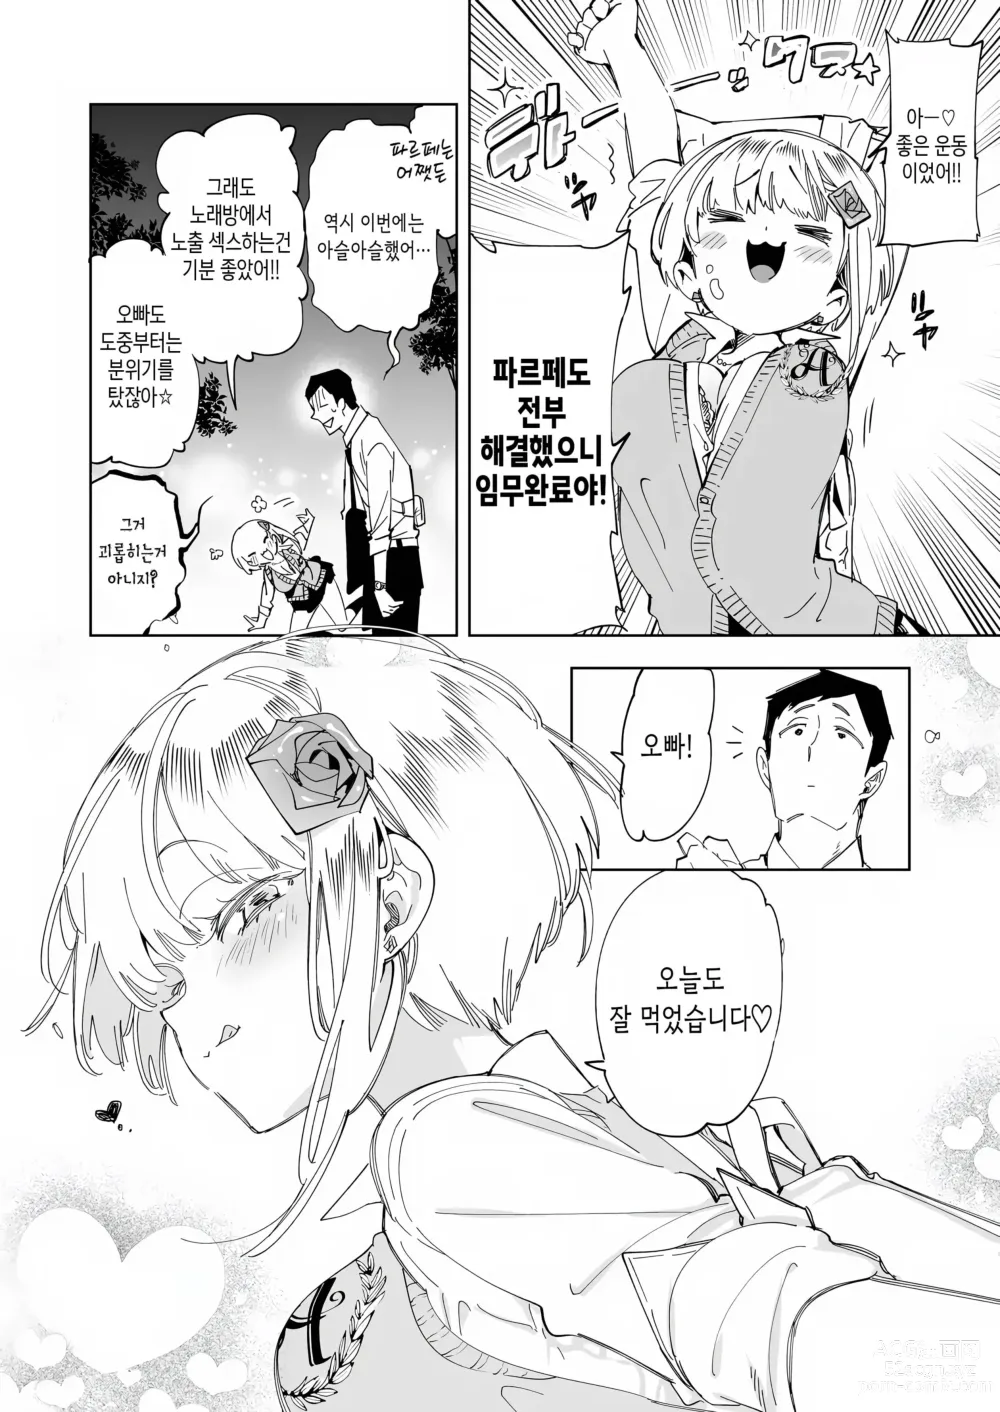 Page 24 of doujinshi 오빠, 우리들이랑 커피 마시러 갈래? 4